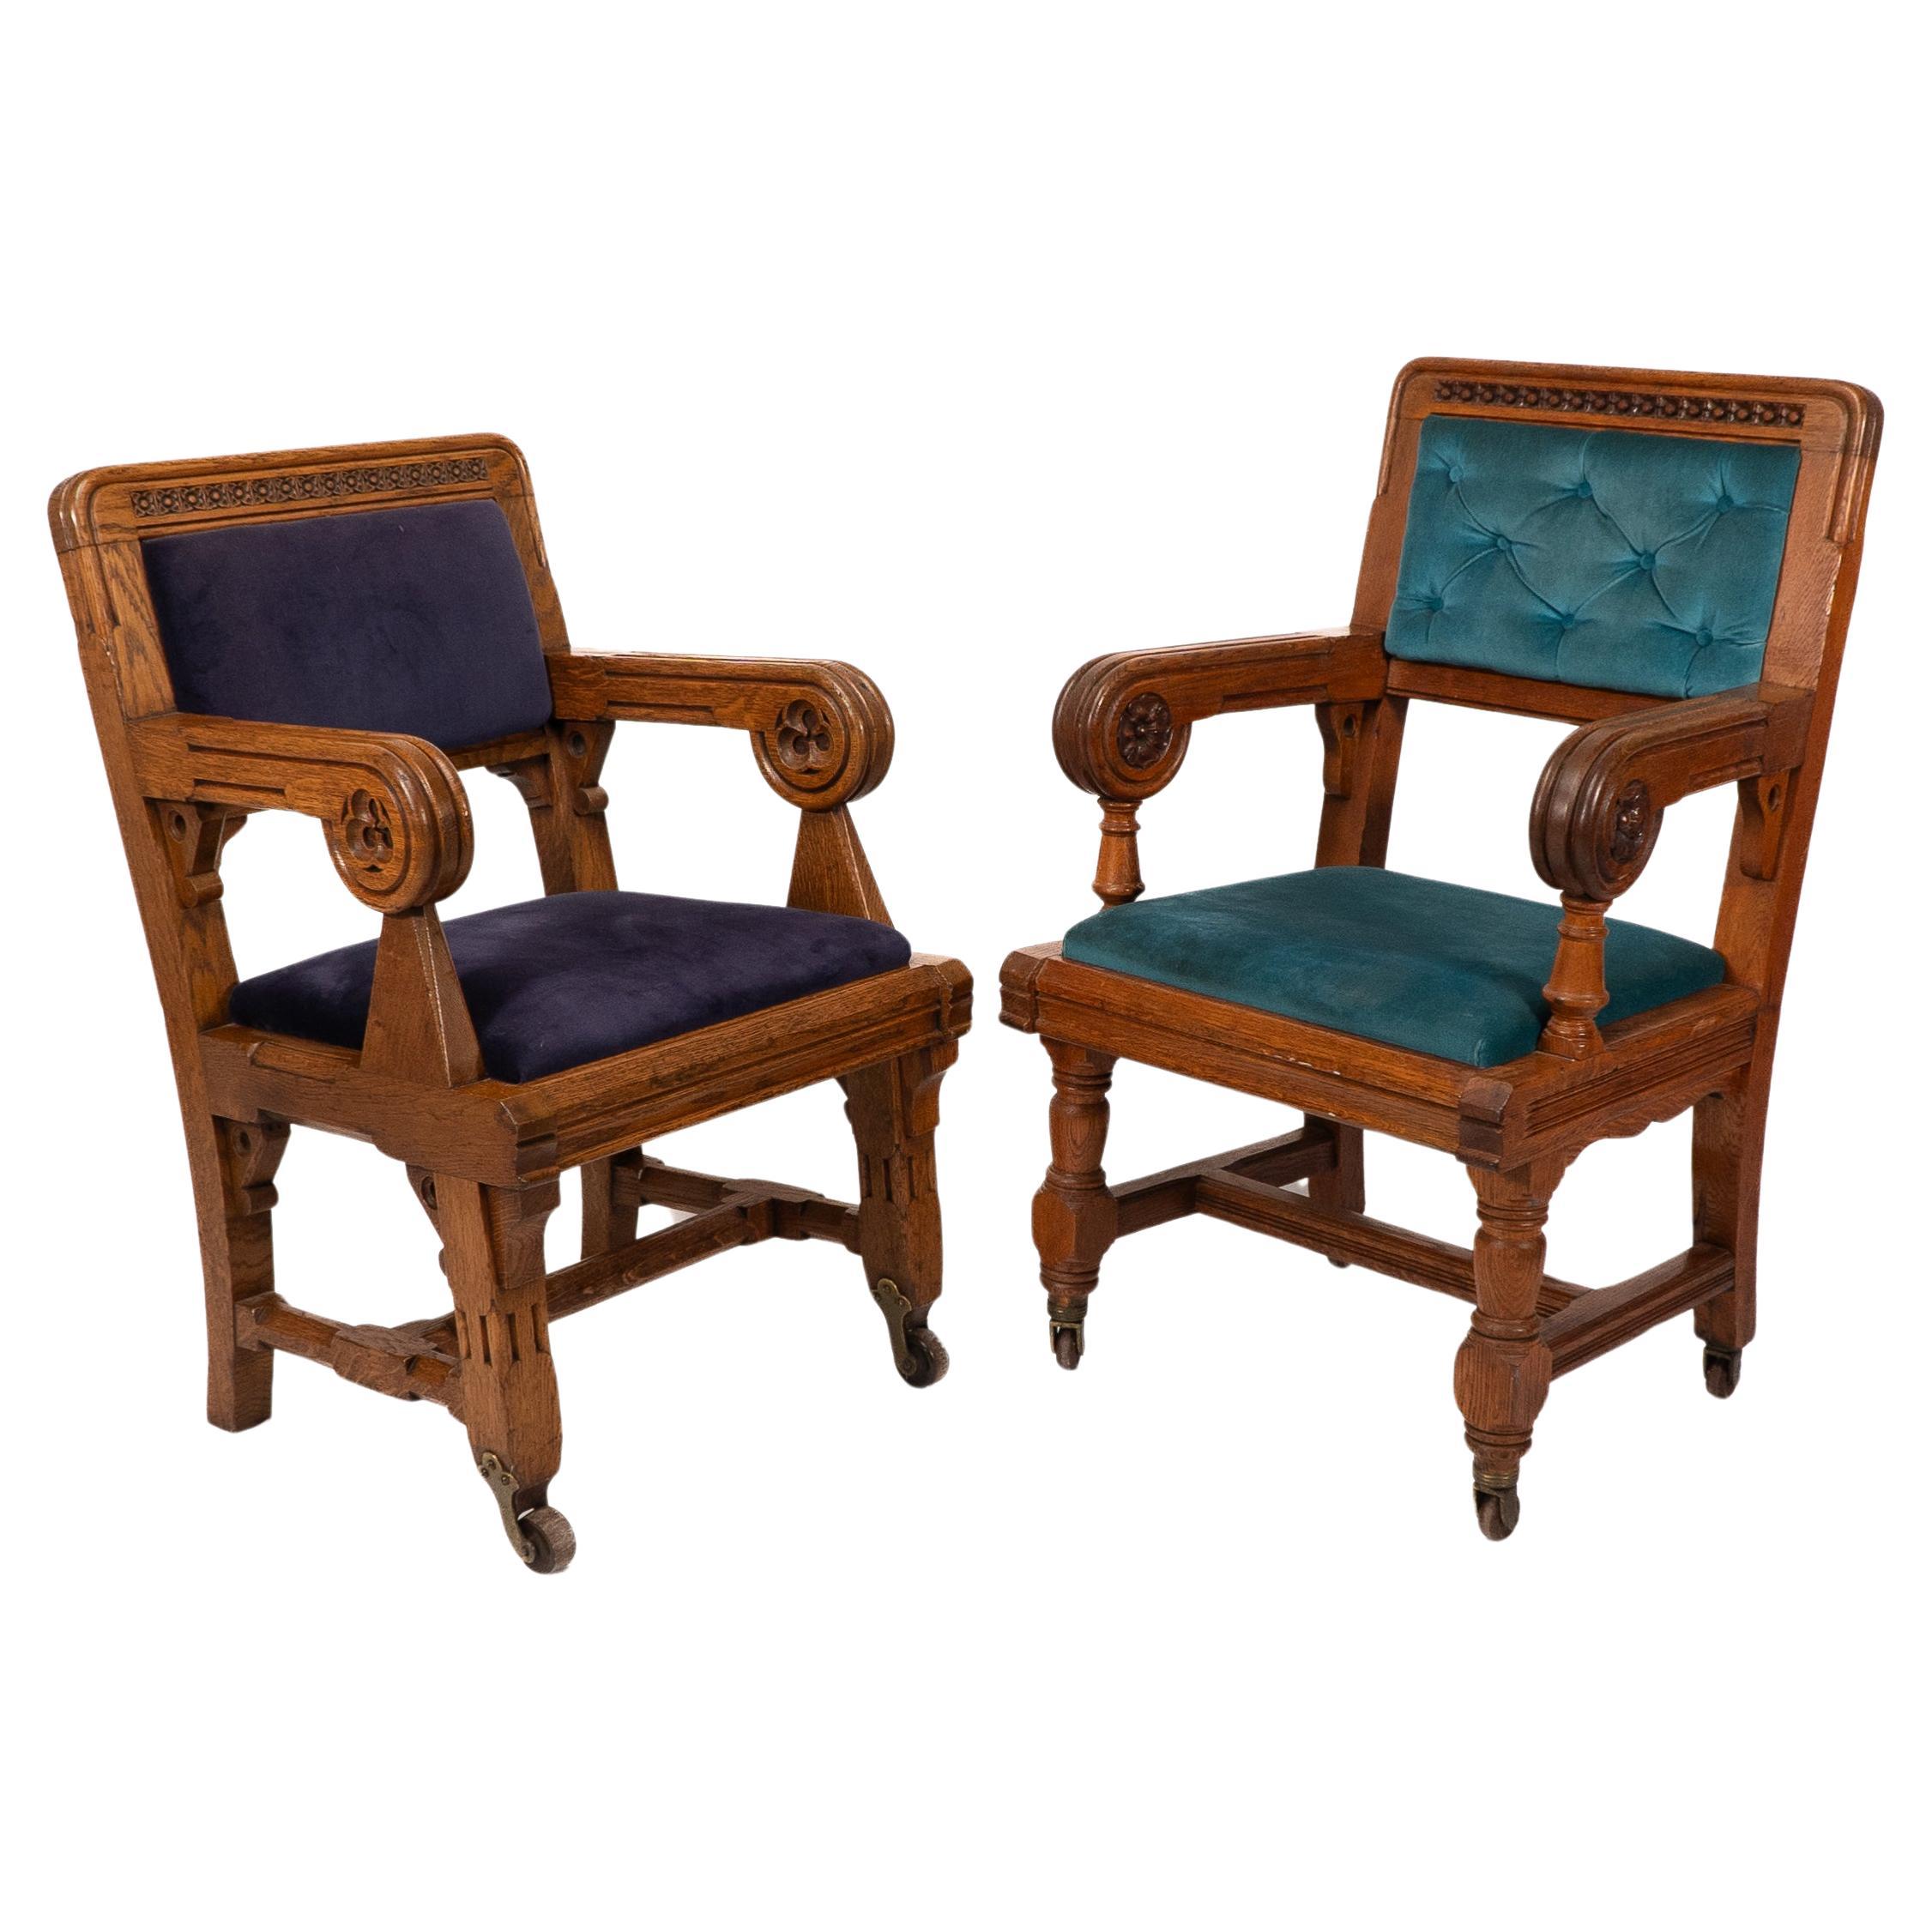 Bruce Talbert, Gillows, deux rares fauteuils en chêne de style néo-gothique, tapissés de bleu.